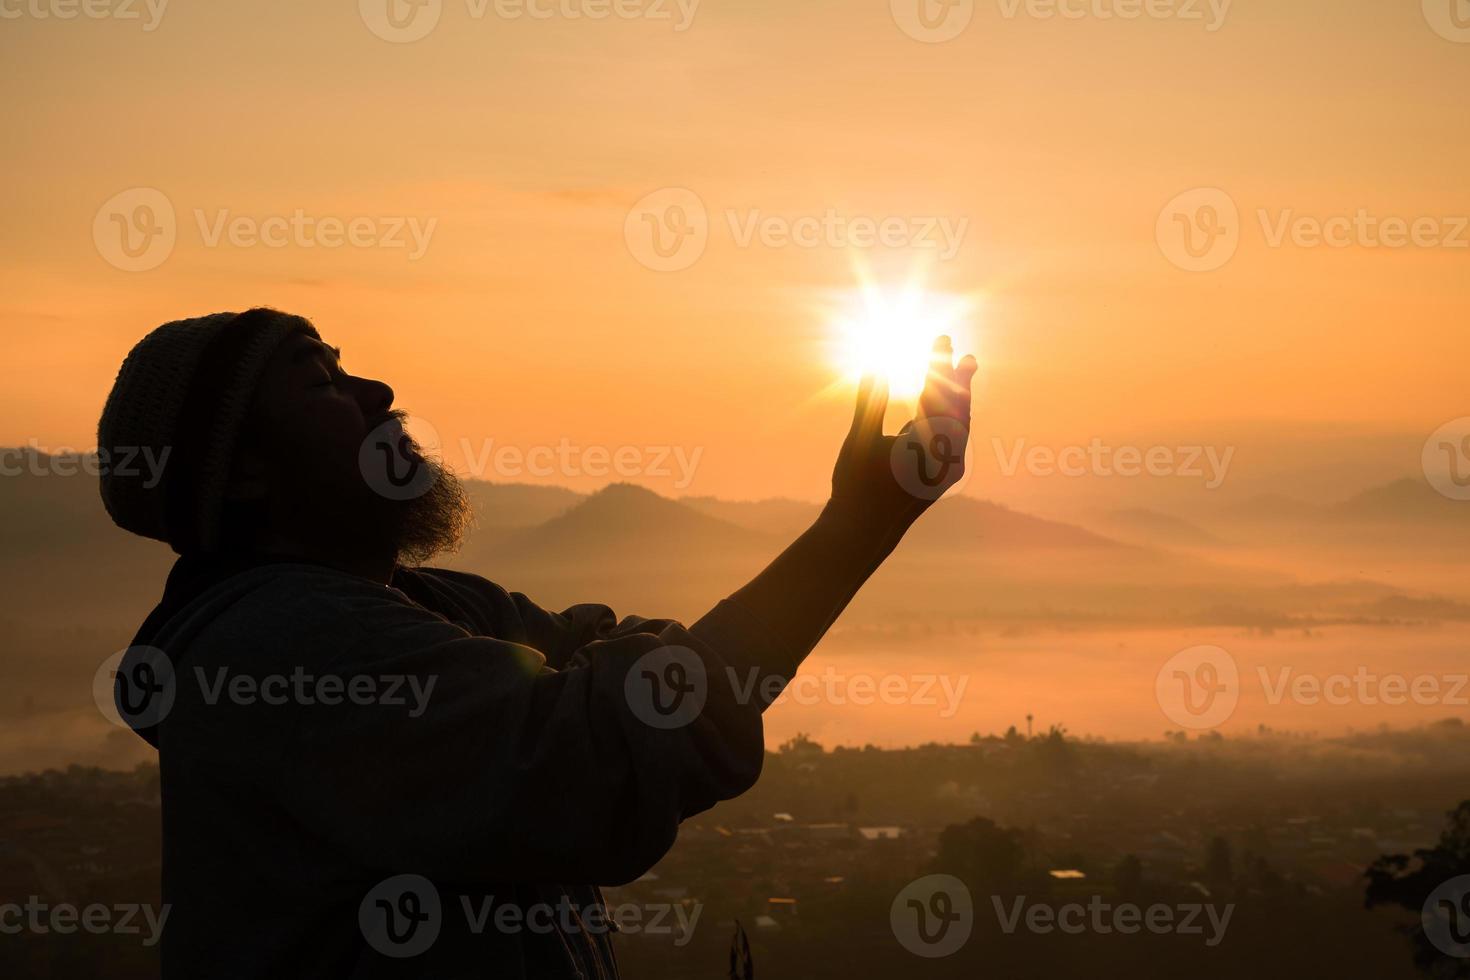 geloof van christen concept geestelijk gebed handen over- zonneschijn met wazig mooi zonsopkomst of zonsondergang achtergrond. christenen wie hebben geloven, geloof in god ochtend- gebed. foto